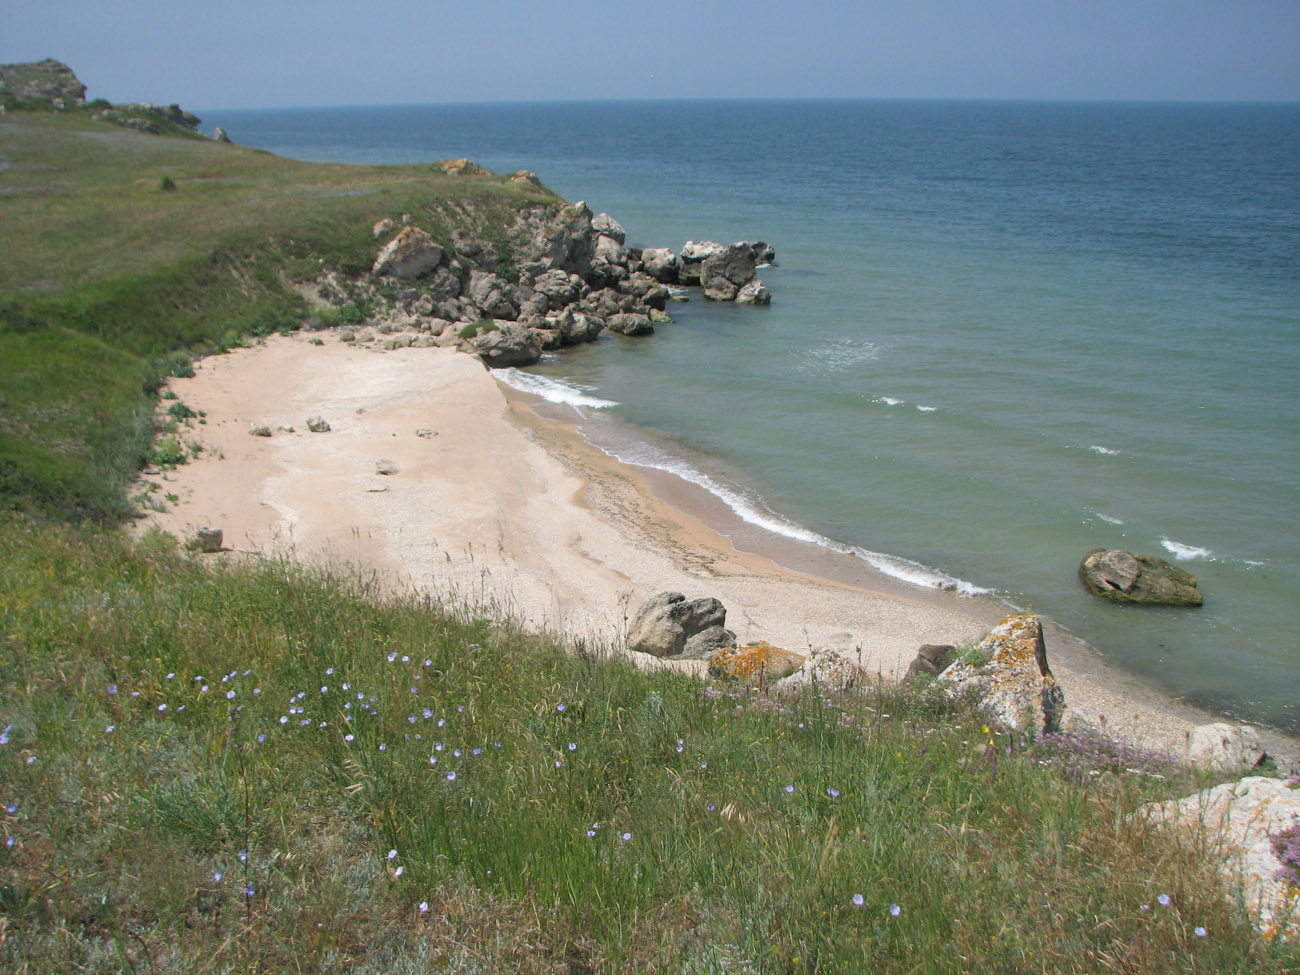 Караларская степь, image of landscape/habitat.